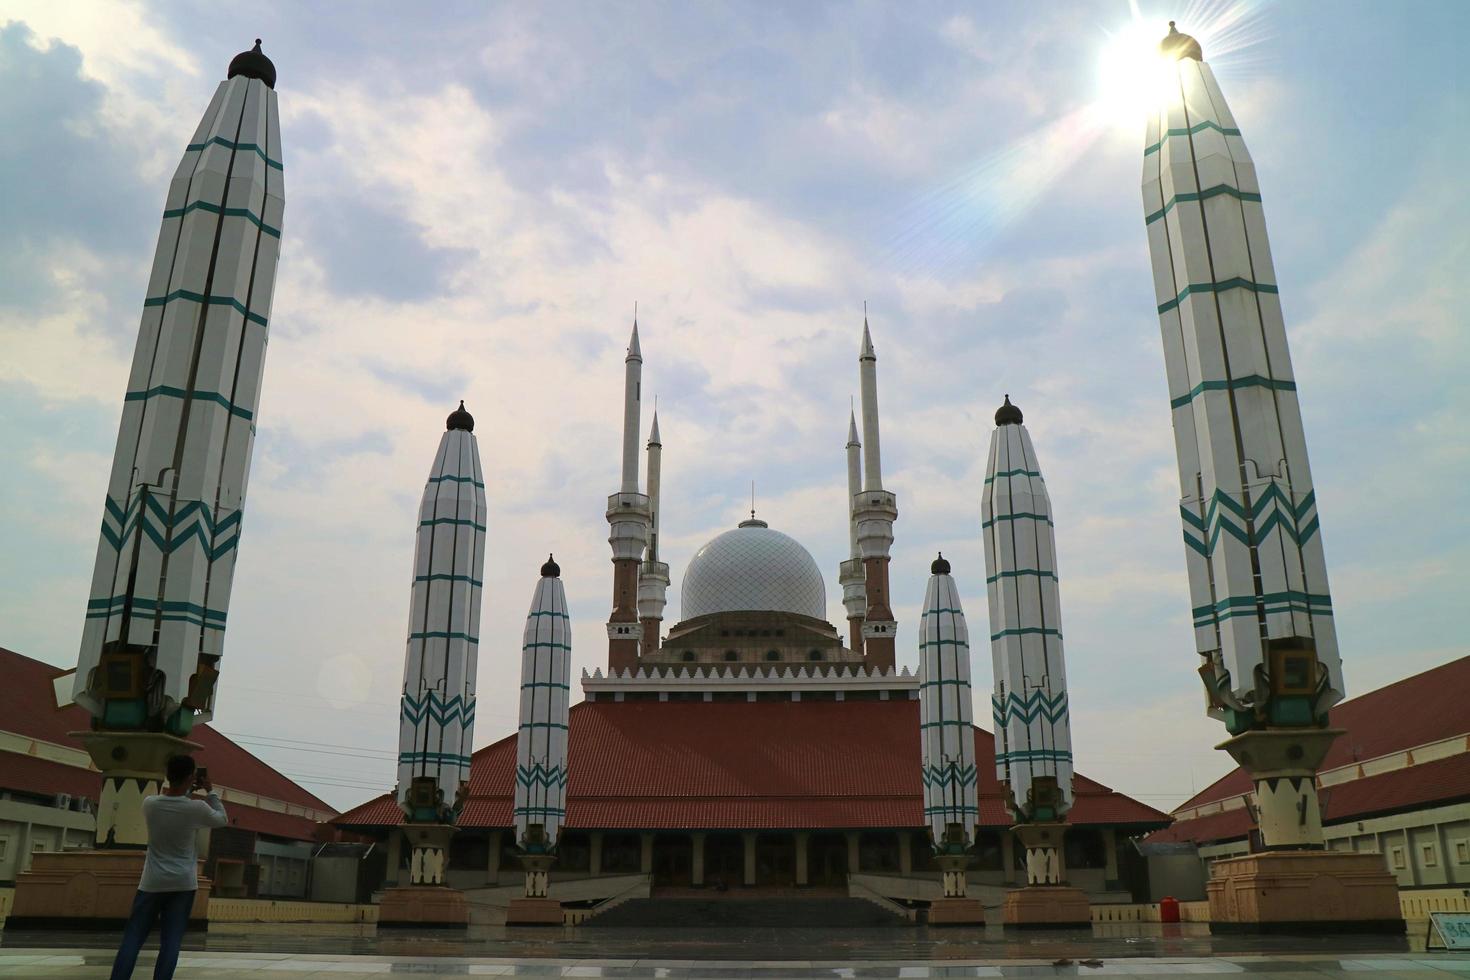 18 July 2021, Masjid Agung Jawa Tengah MAJT. Semarang, Indonesia photo